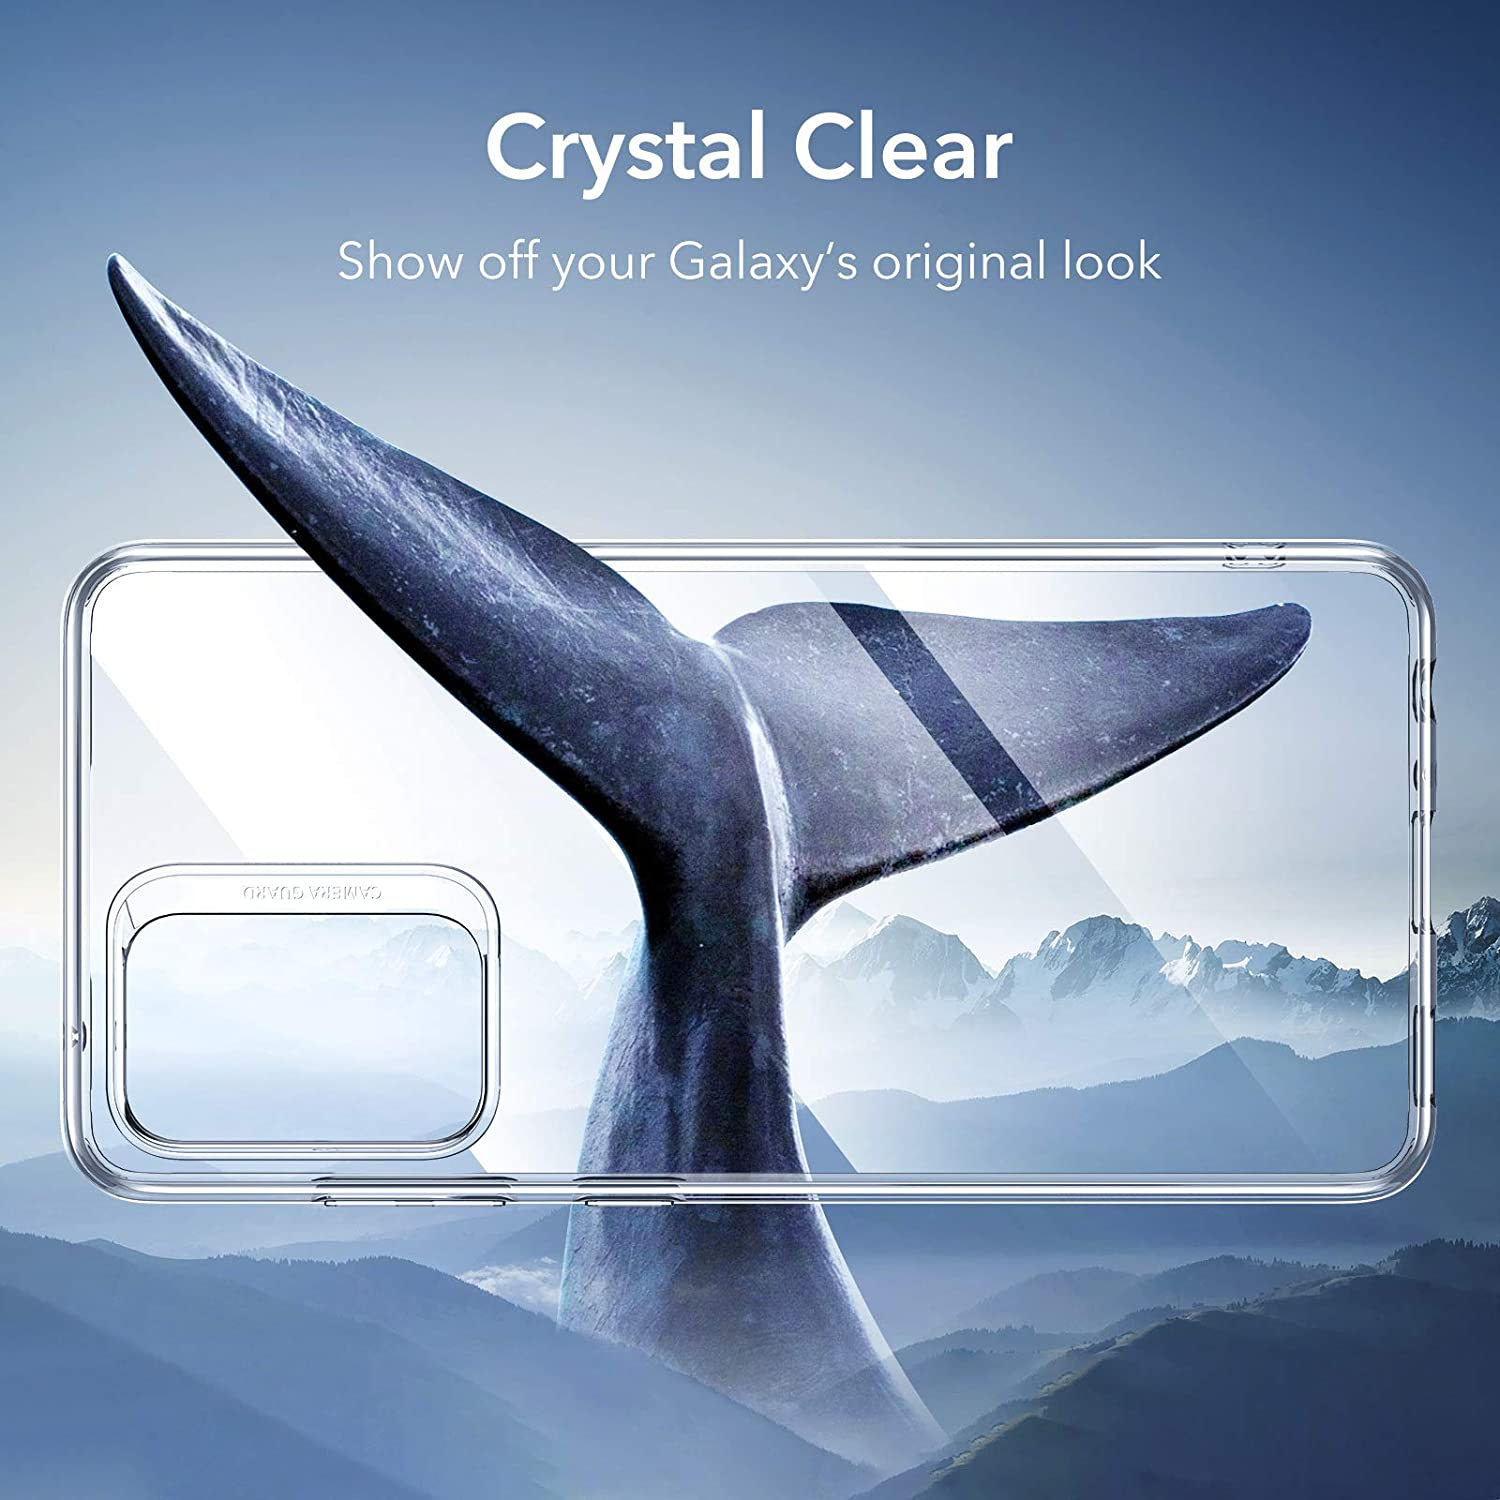 Ốp lưng silicon dẻo trong suốt cho Samsung Galaxy A52 / A52 5G / A52s hiệu Ultra Thin mỏng 0.6mm độ trong tuyệt đối chống trầy xước - Hàng nhập khẩu